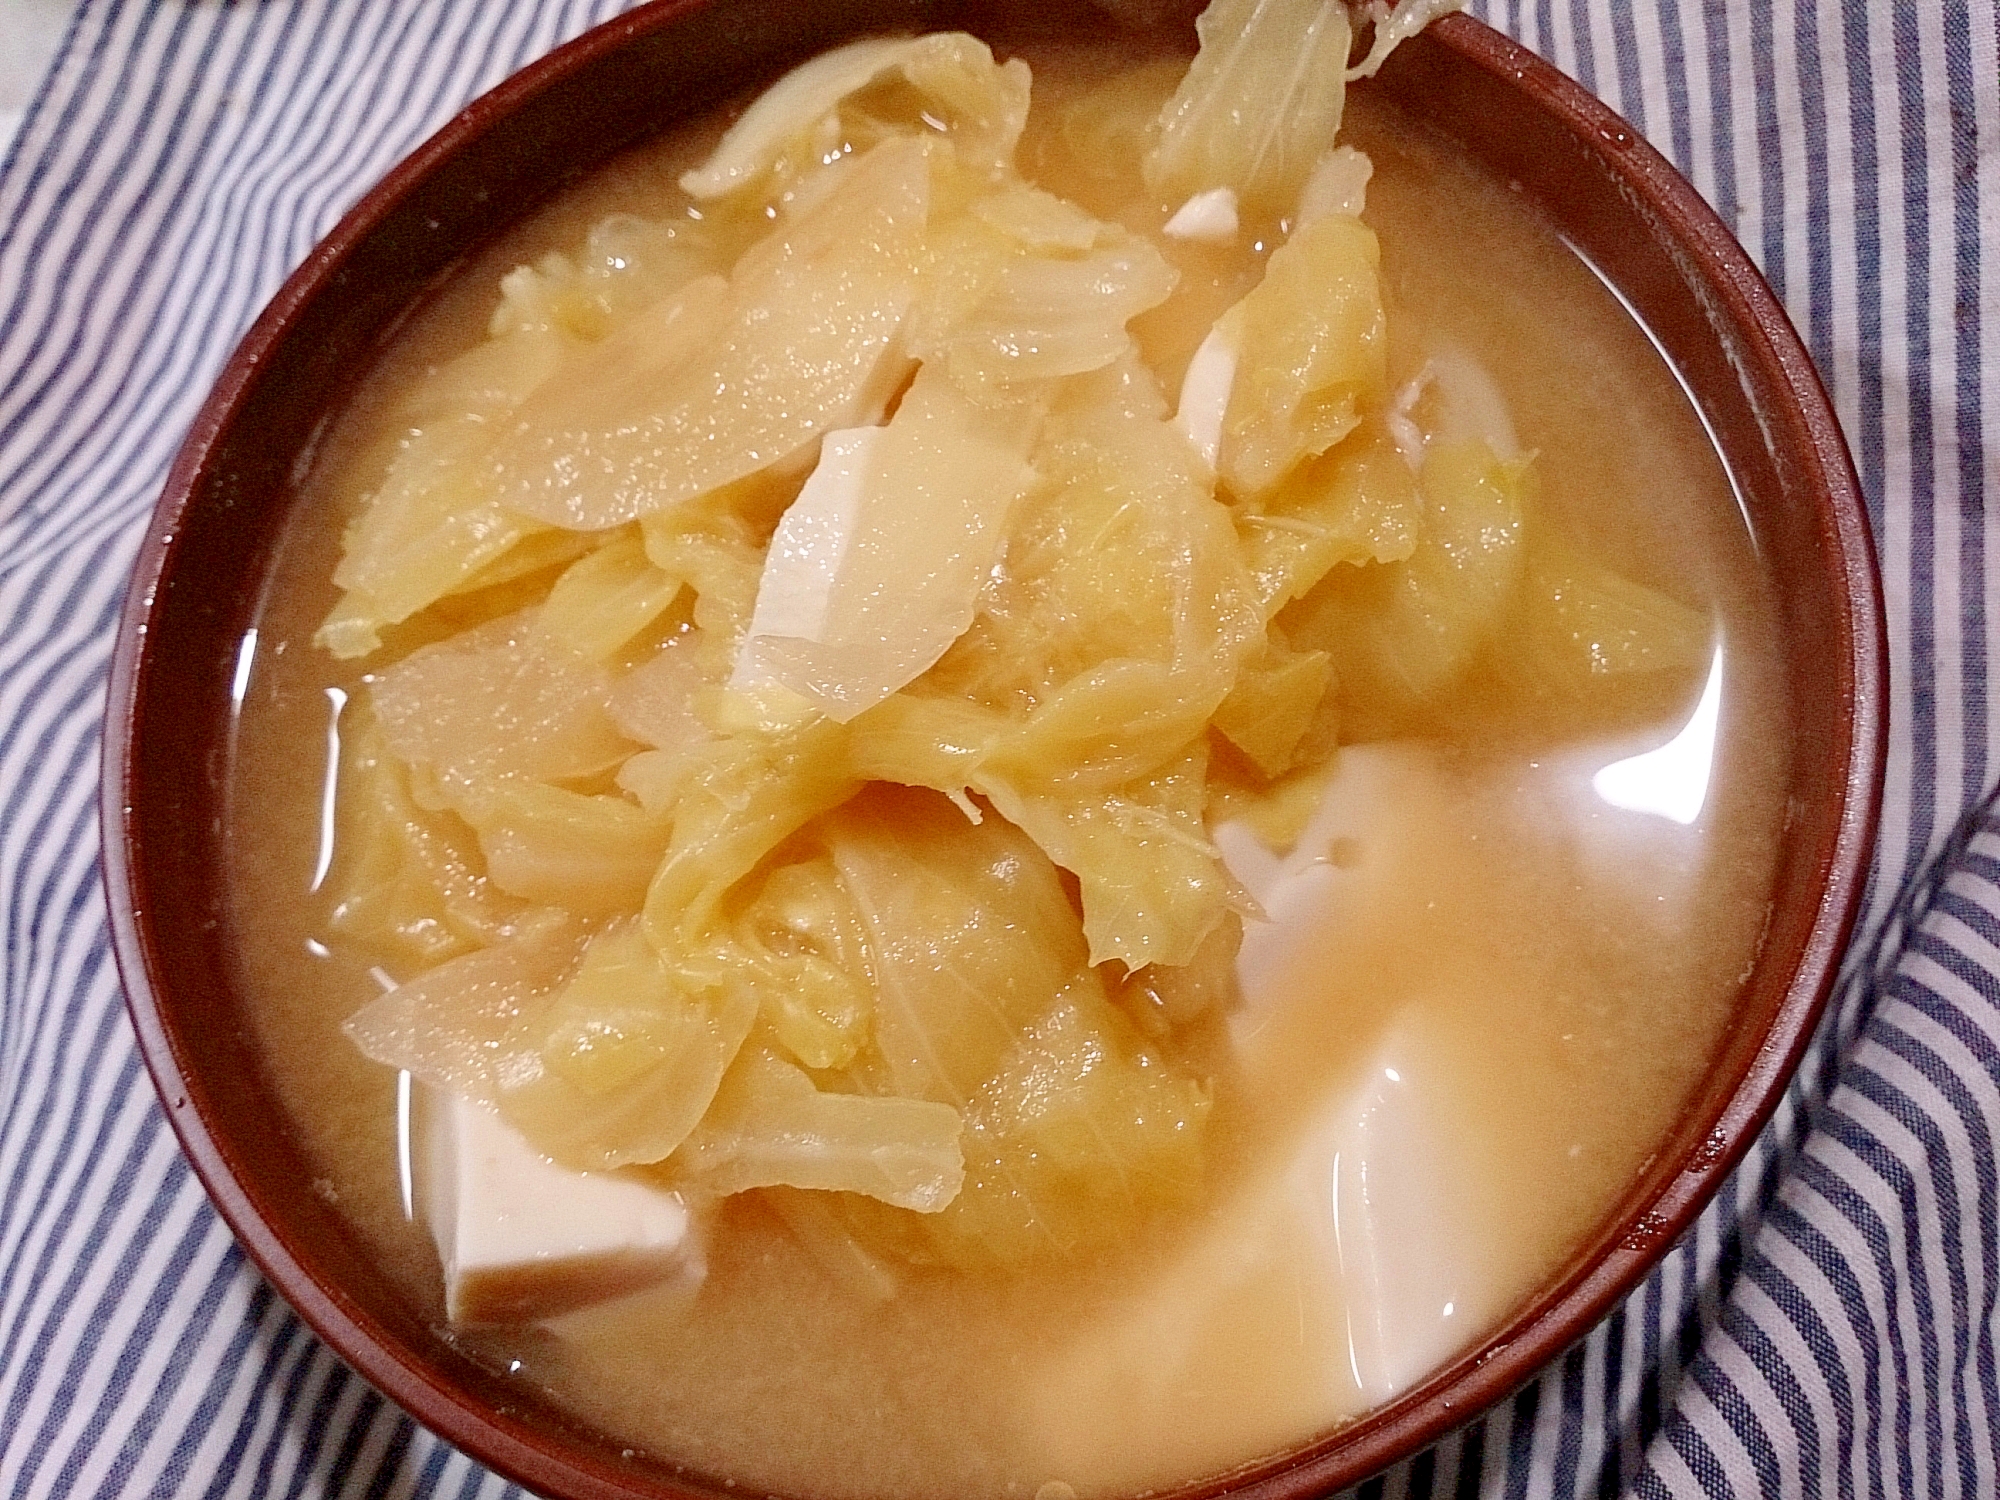 キャベツと玉ねぎと絹ごし豆腐の味噌汁(圧力鍋)